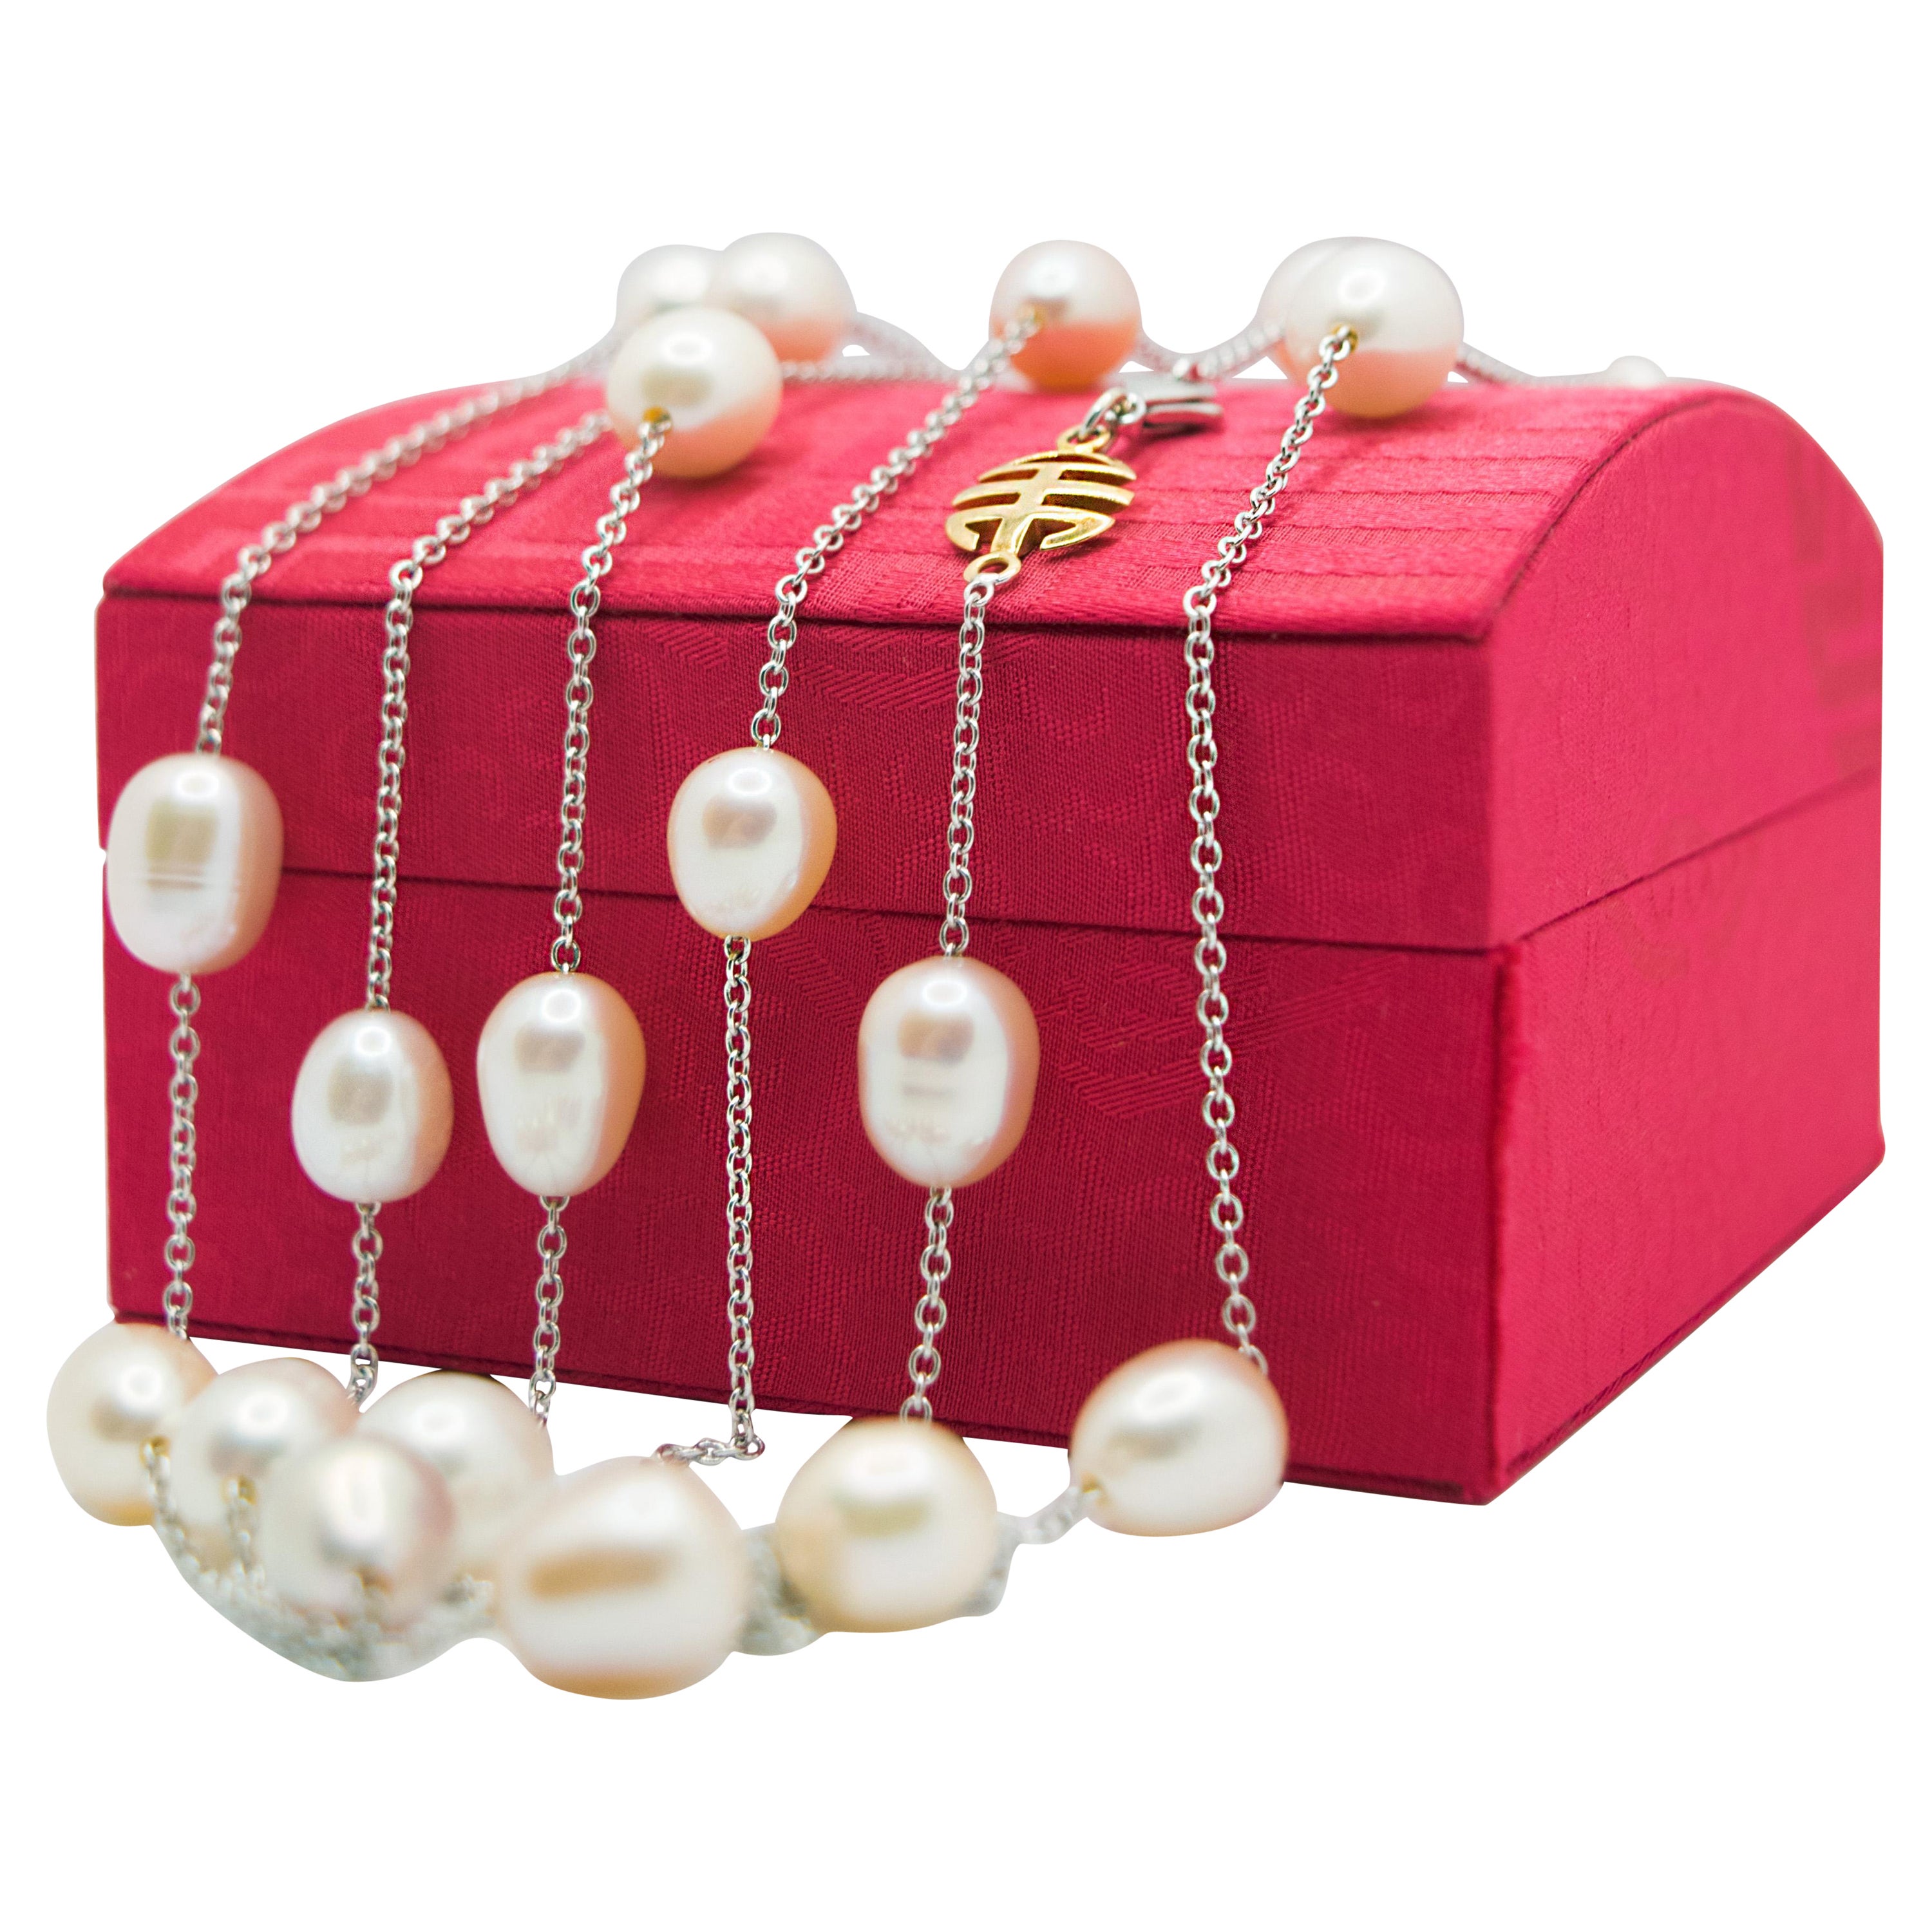 Sautoir en or blanc et perles roses, perles blanches et perles jaunes